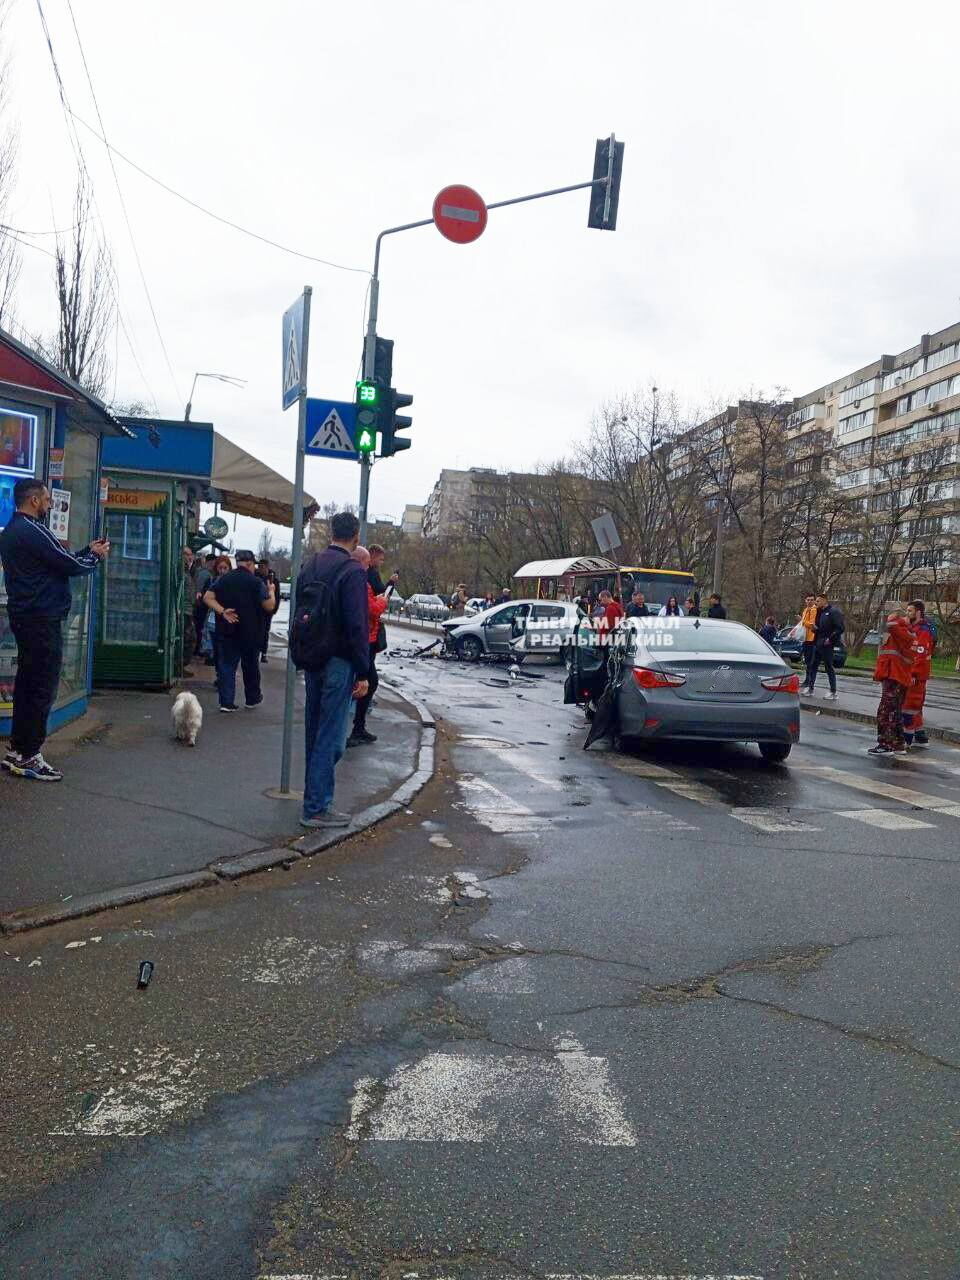 У Києві машина збила металеву огорожу та ледь не влетіла в зупинку трамвая. Фото, відео і подробиці